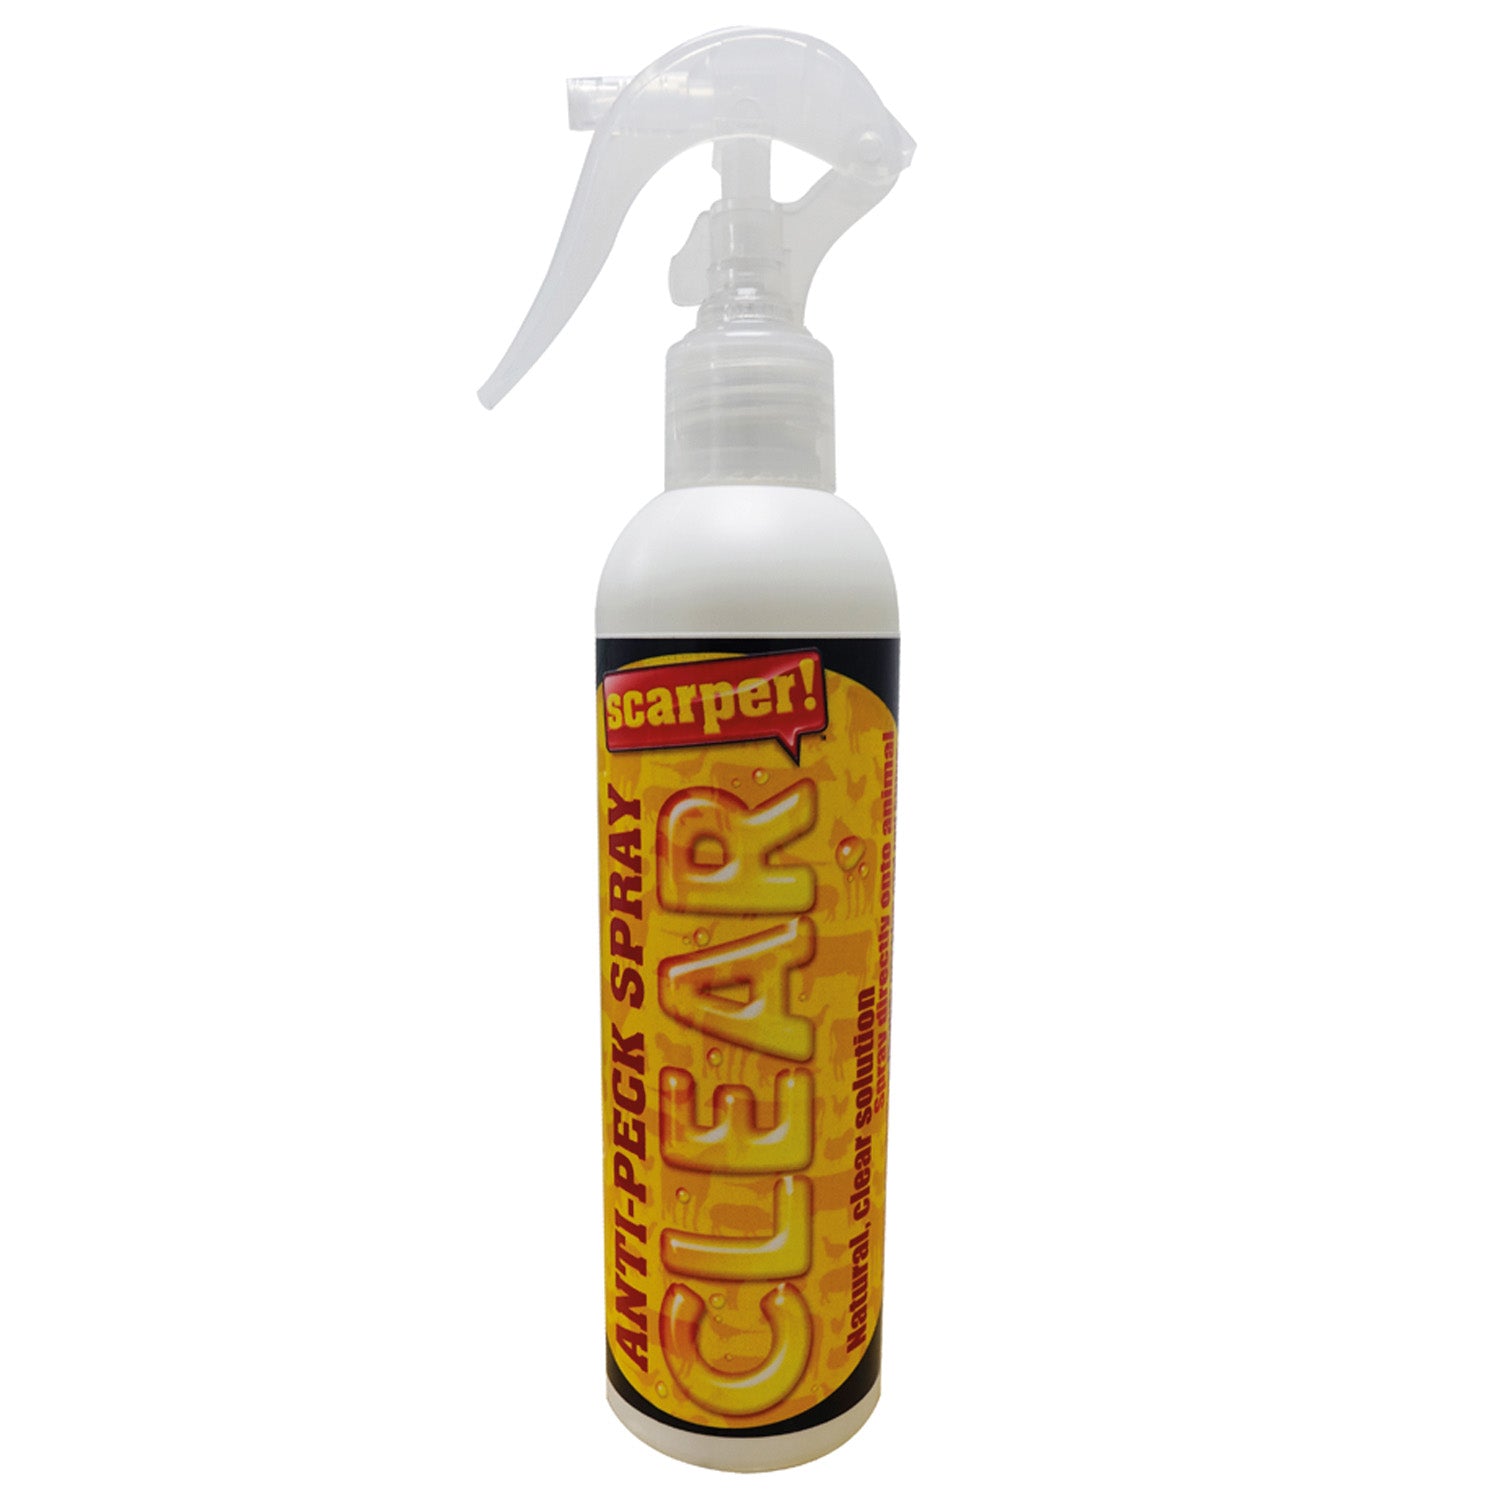 PestTrappa Scarper Clear Anti-Peck Spray- 250ml